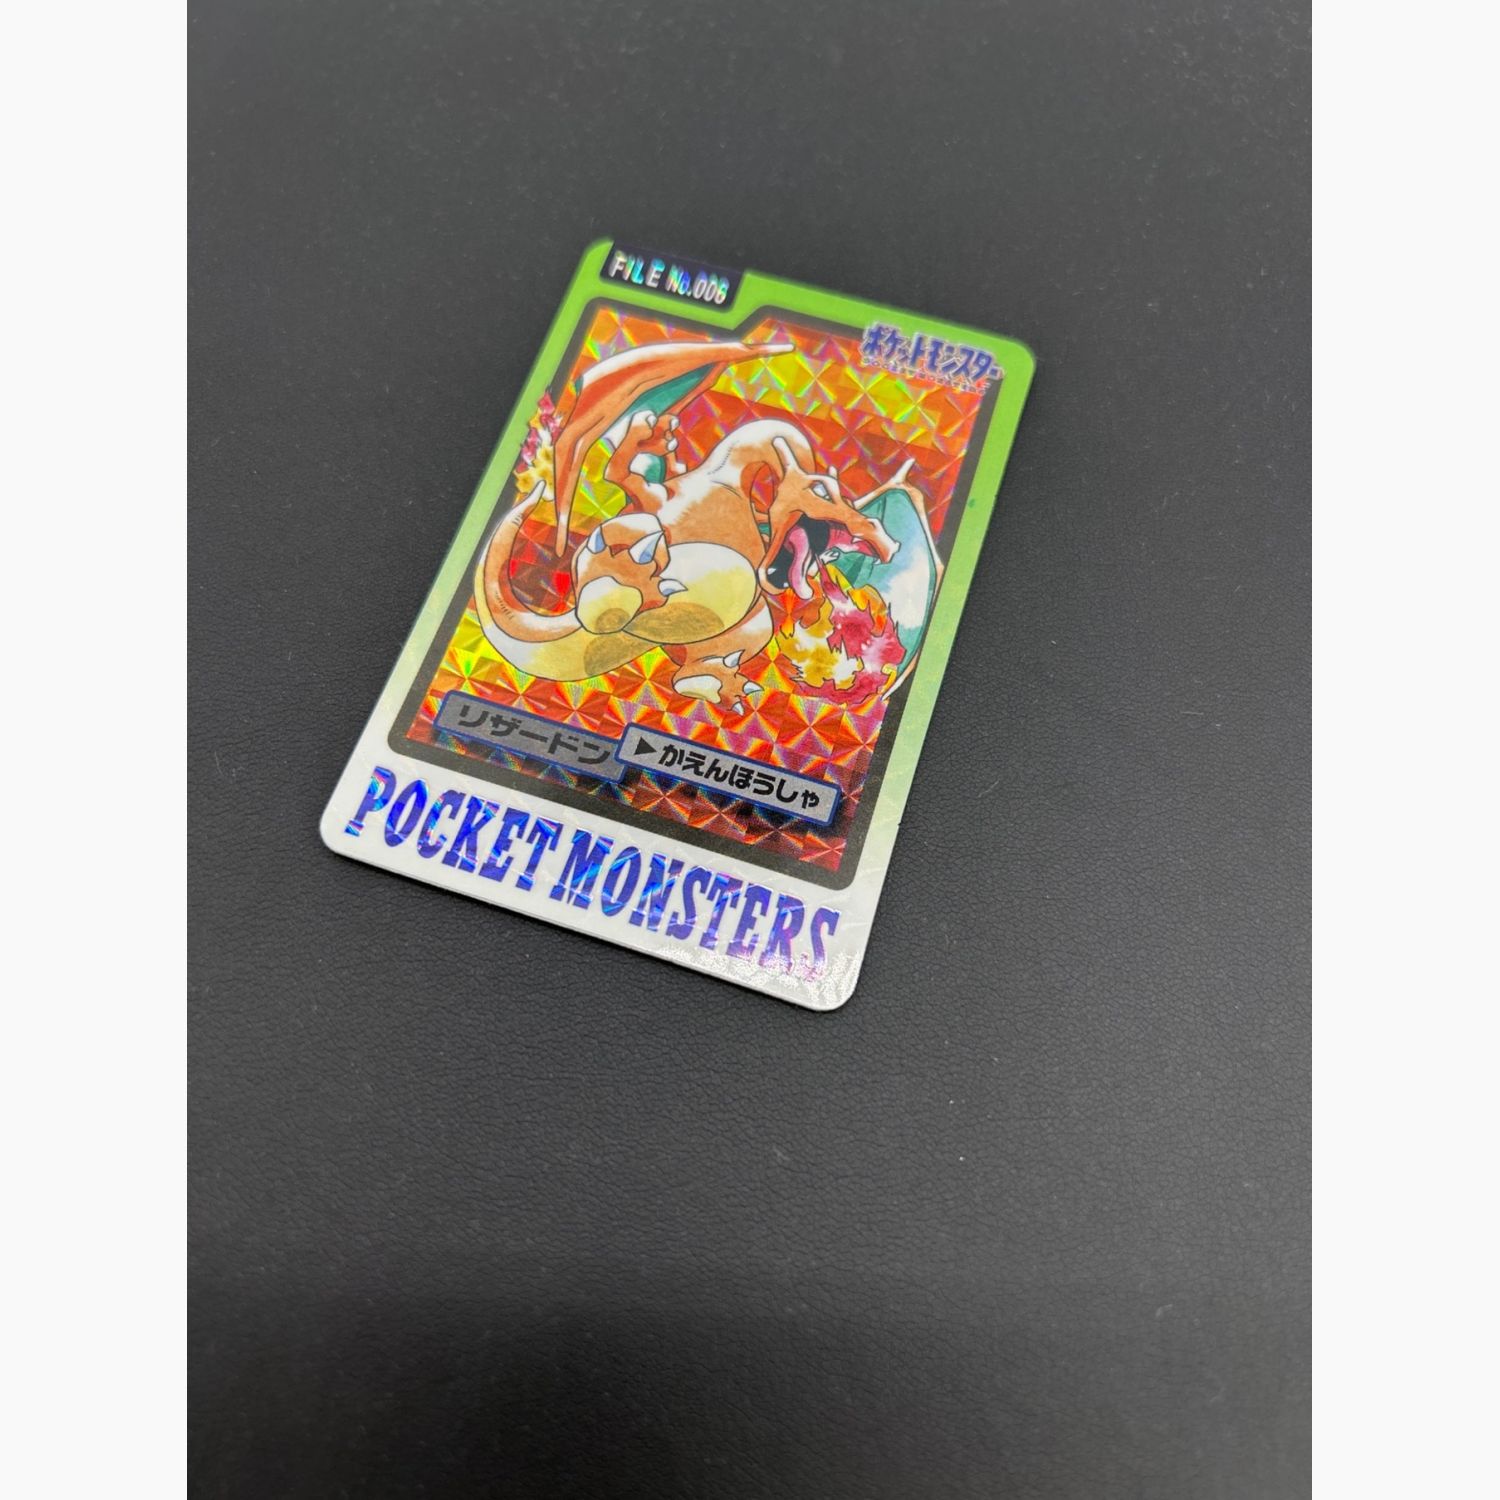 ポケモン カードダス 1997年のもの - ポケモンカードゲーム